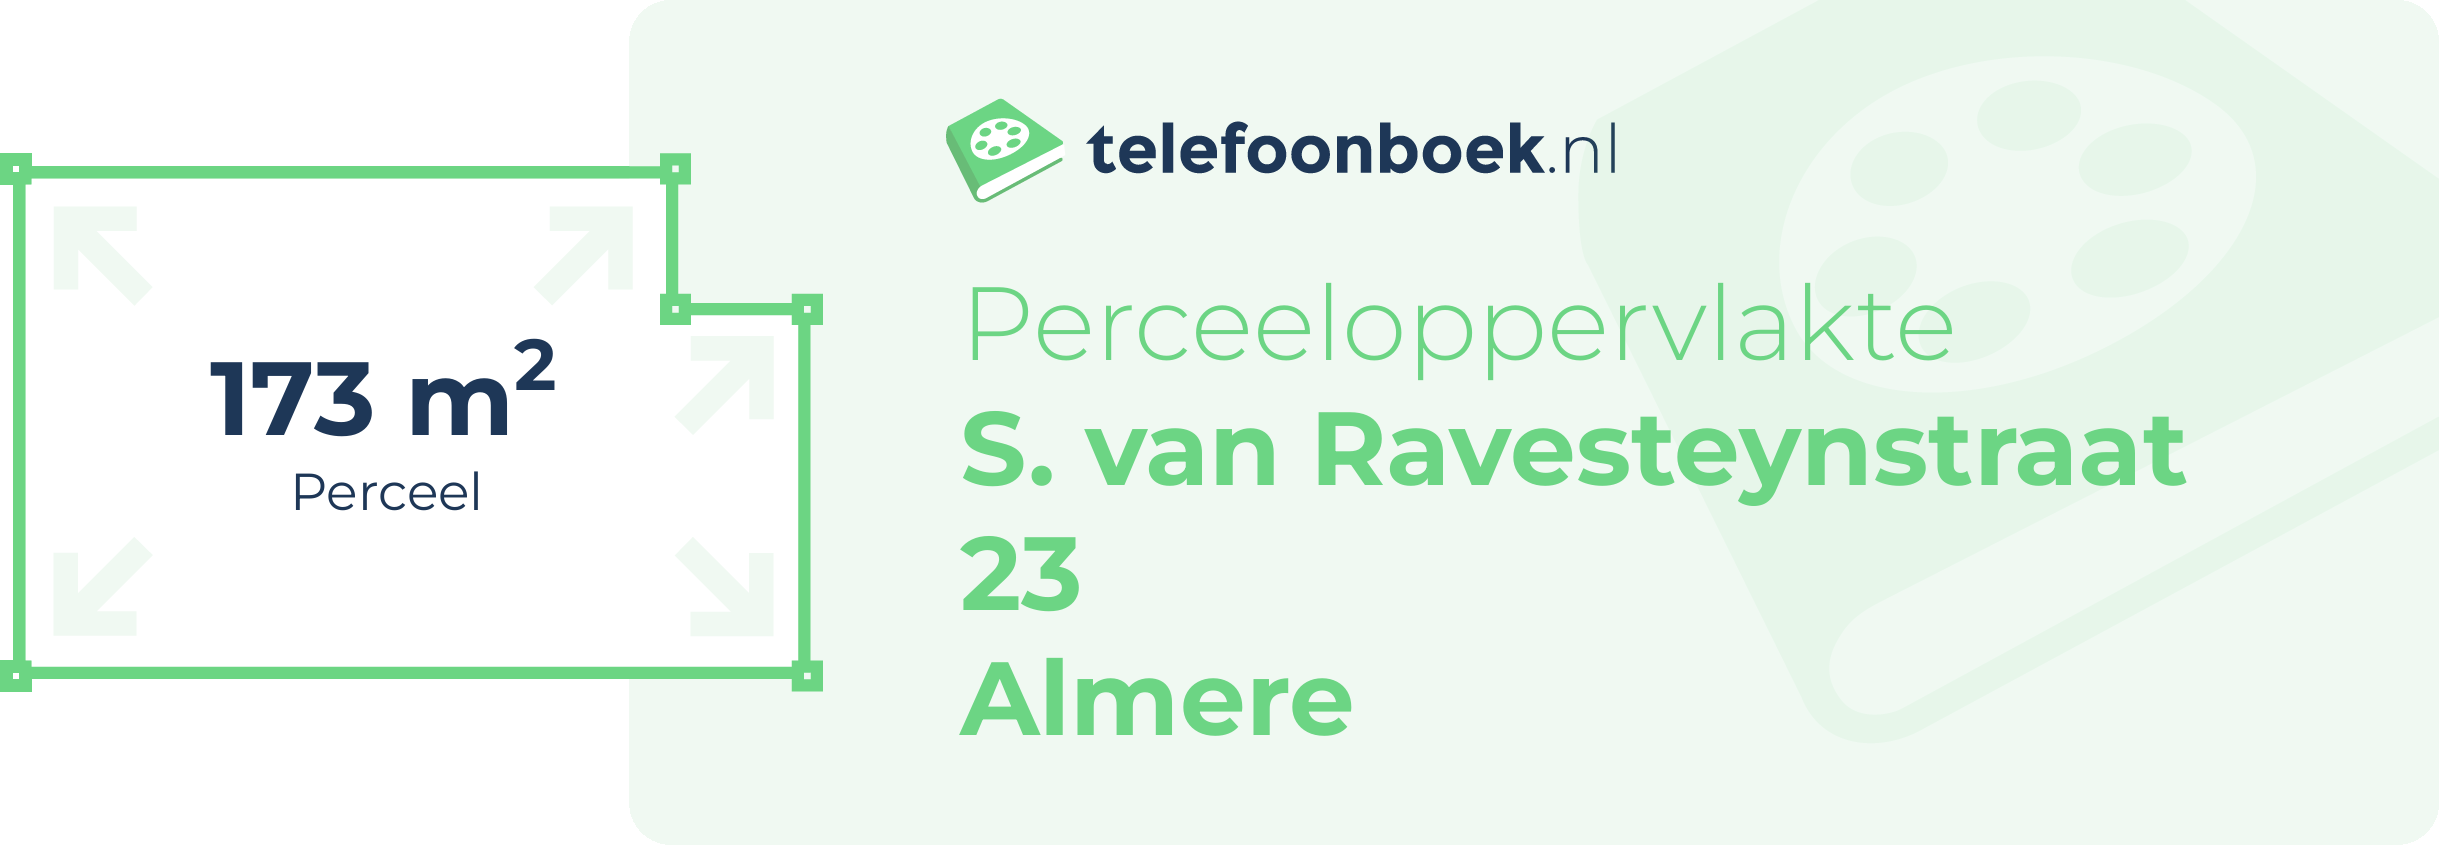 Perceeloppervlakte S. Van Ravesteynstraat 23 Almere